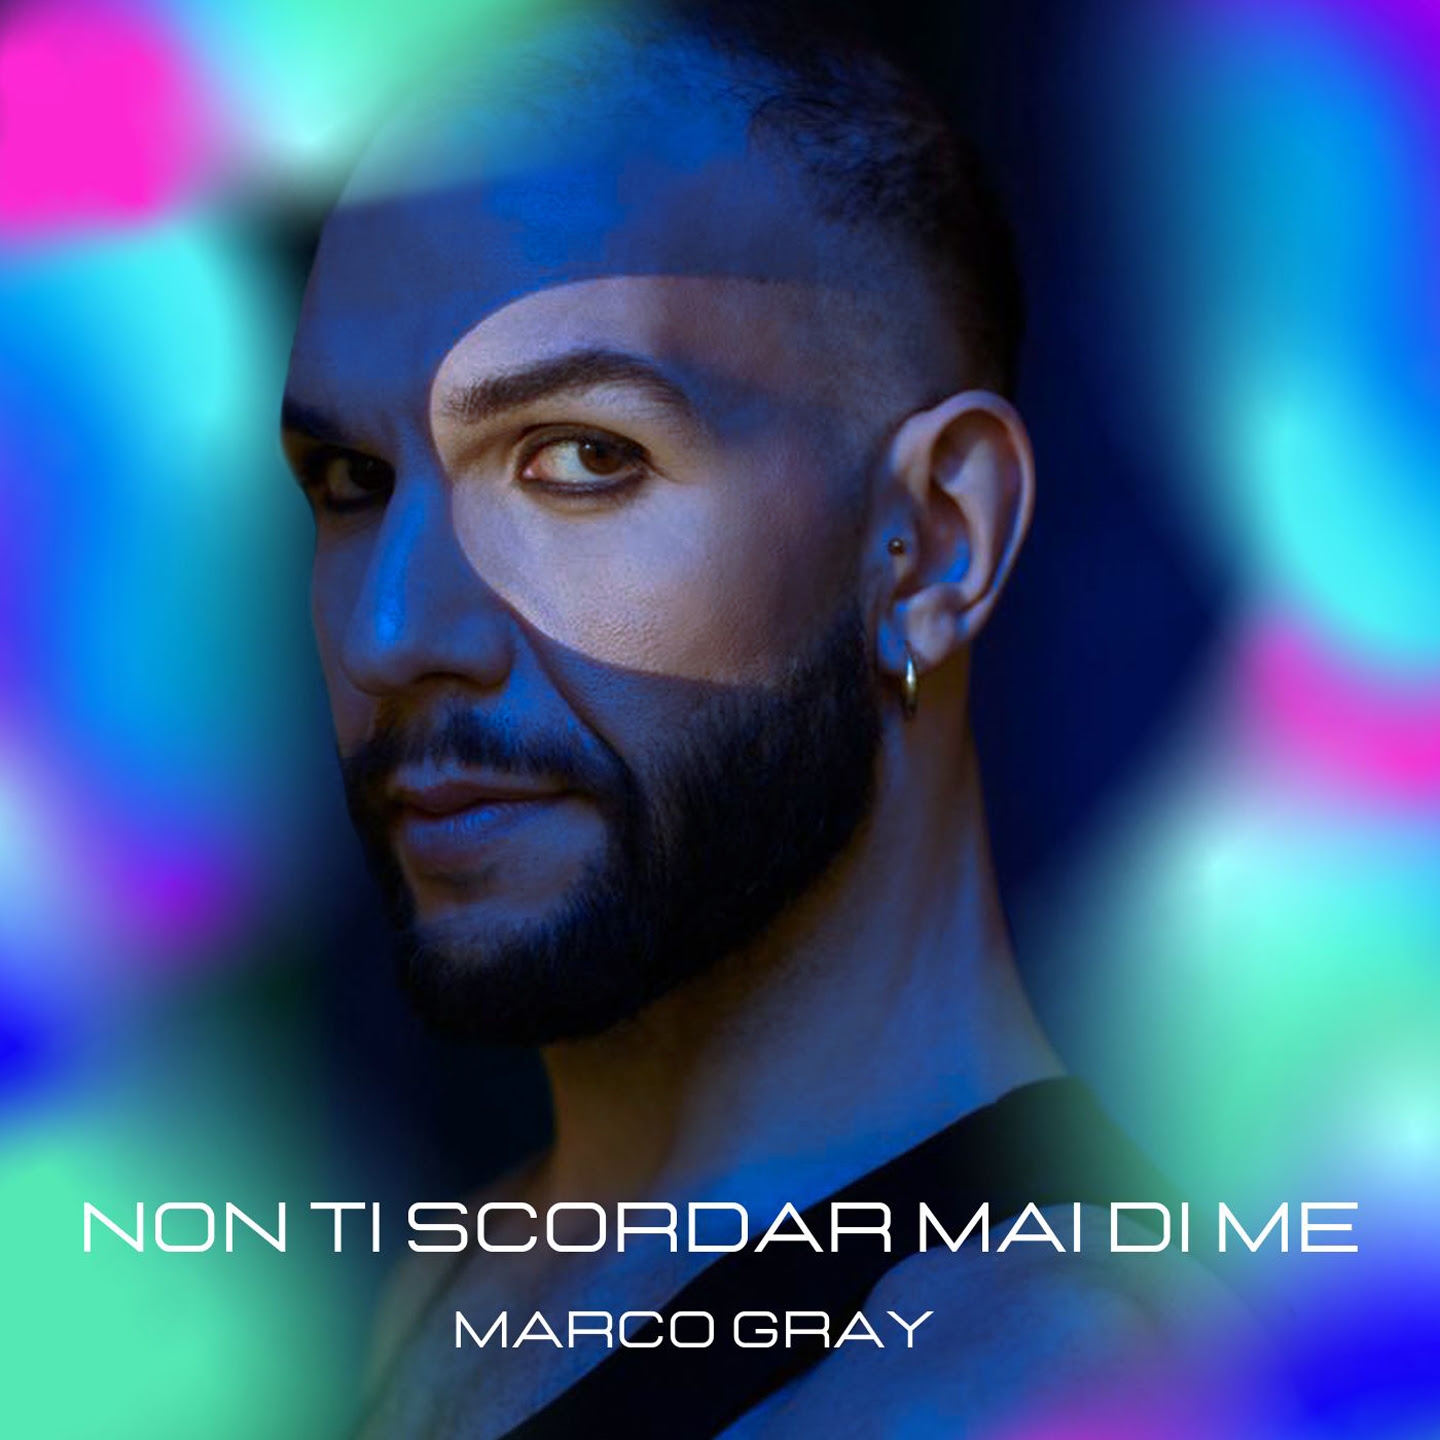 MARCO GRAY: venerdì 14 aprile esce in radio e in digitale “NON TI SCORDAR MAI DI ME” il nuovo singolo